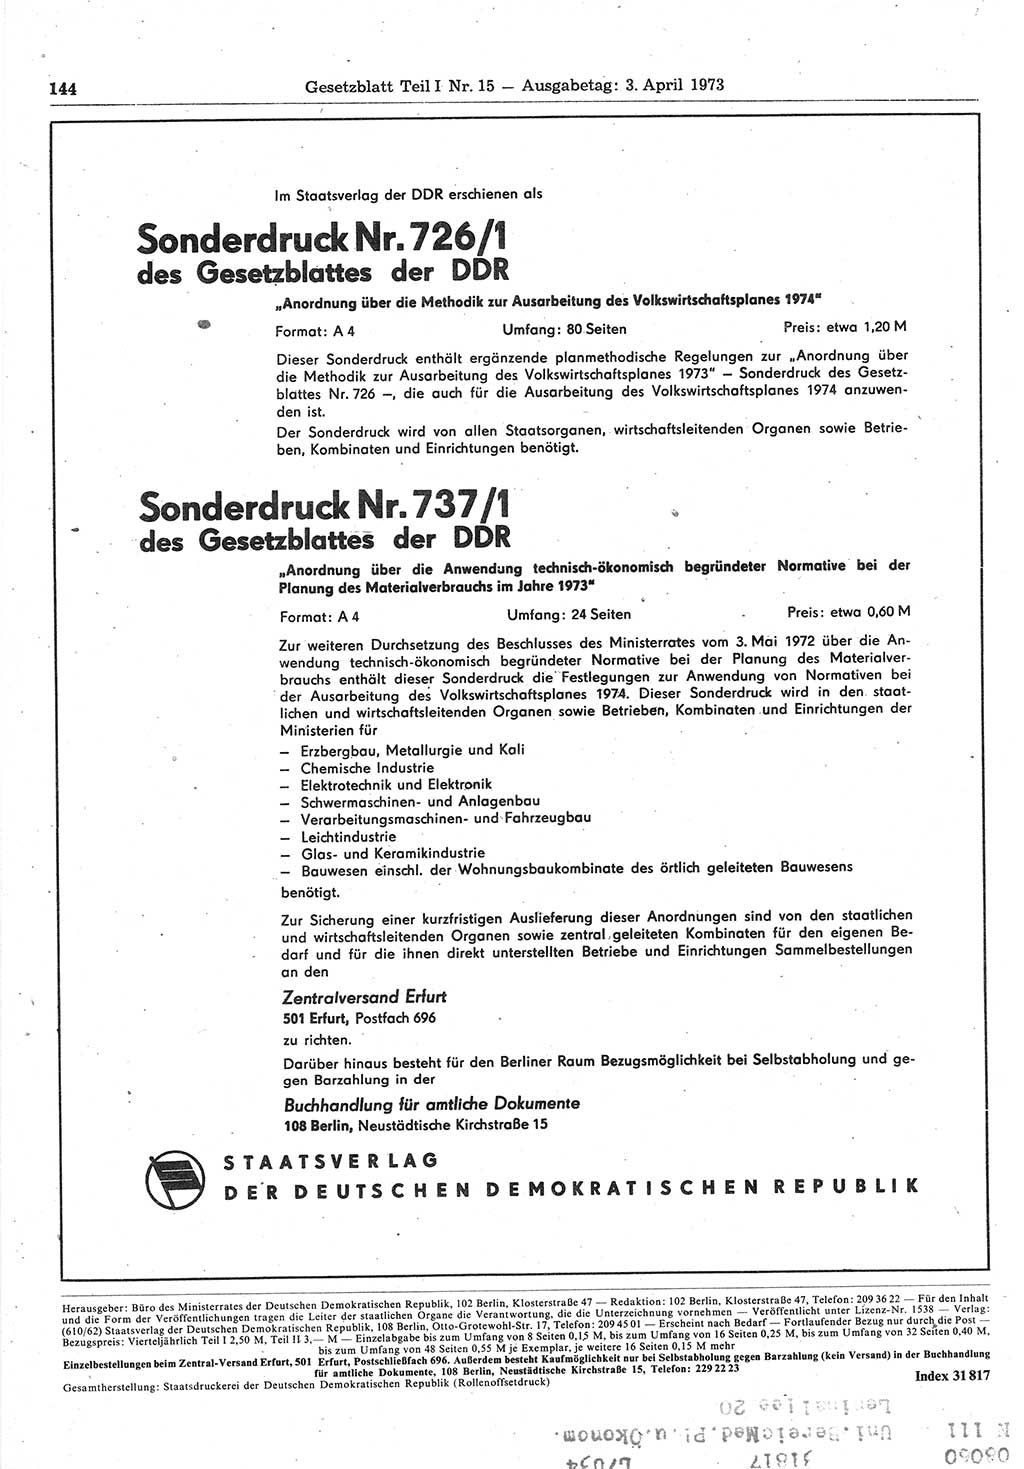 Gesetzblatt (GBl.) der Deutschen Demokratischen Republik (DDR) Teil Ⅰ 1973, Seite 144 (GBl. DDR Ⅰ 1973, S. 144)